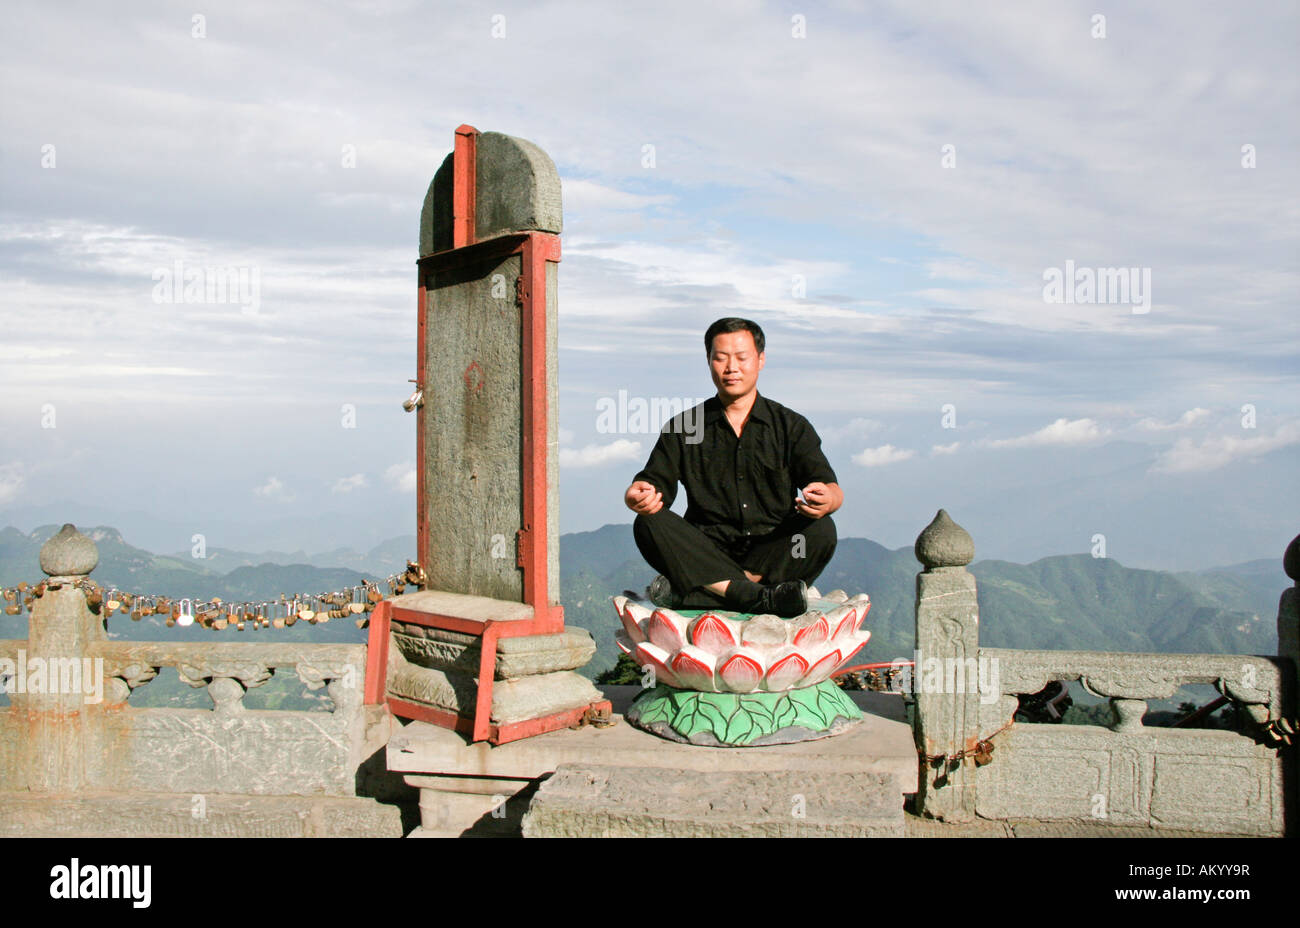 Taiji master Cheng Lijung sitting in a lotus blossom, Wudang Mountains, China Stock Photo